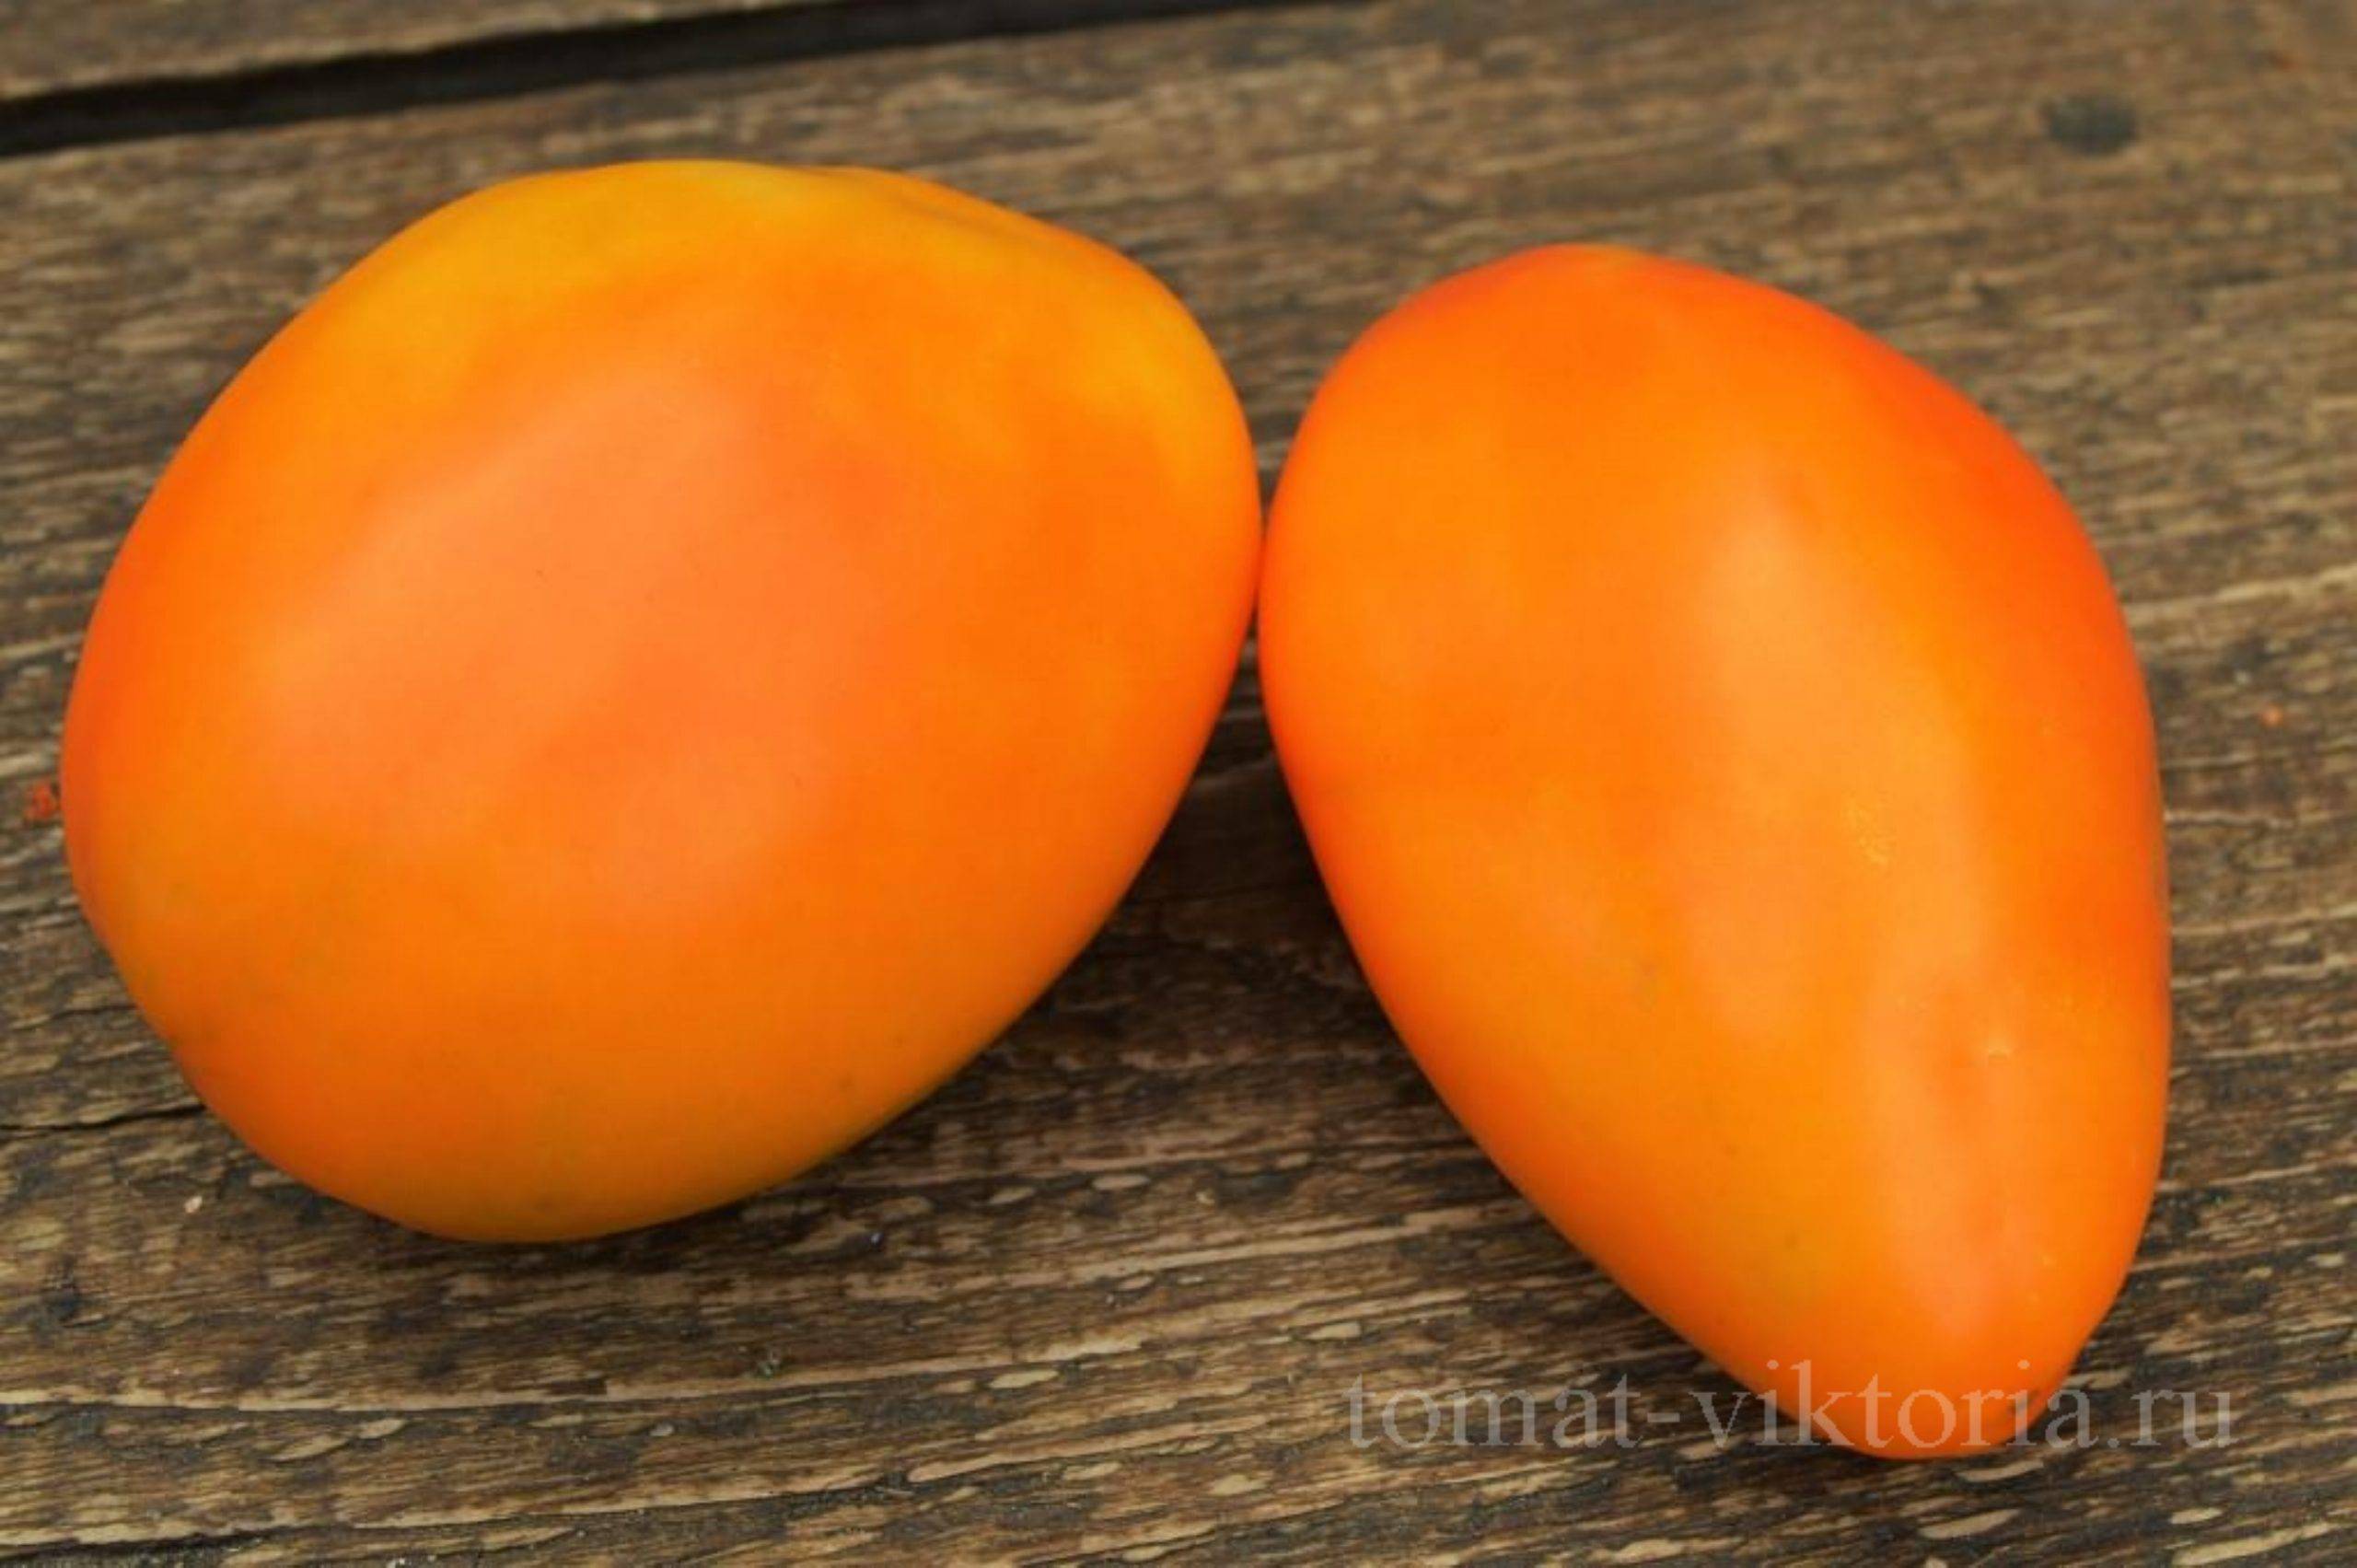 ✅ томат оранжевое чудо — описание сорта, отзывы, урожайность - cvetochki-penza.ru